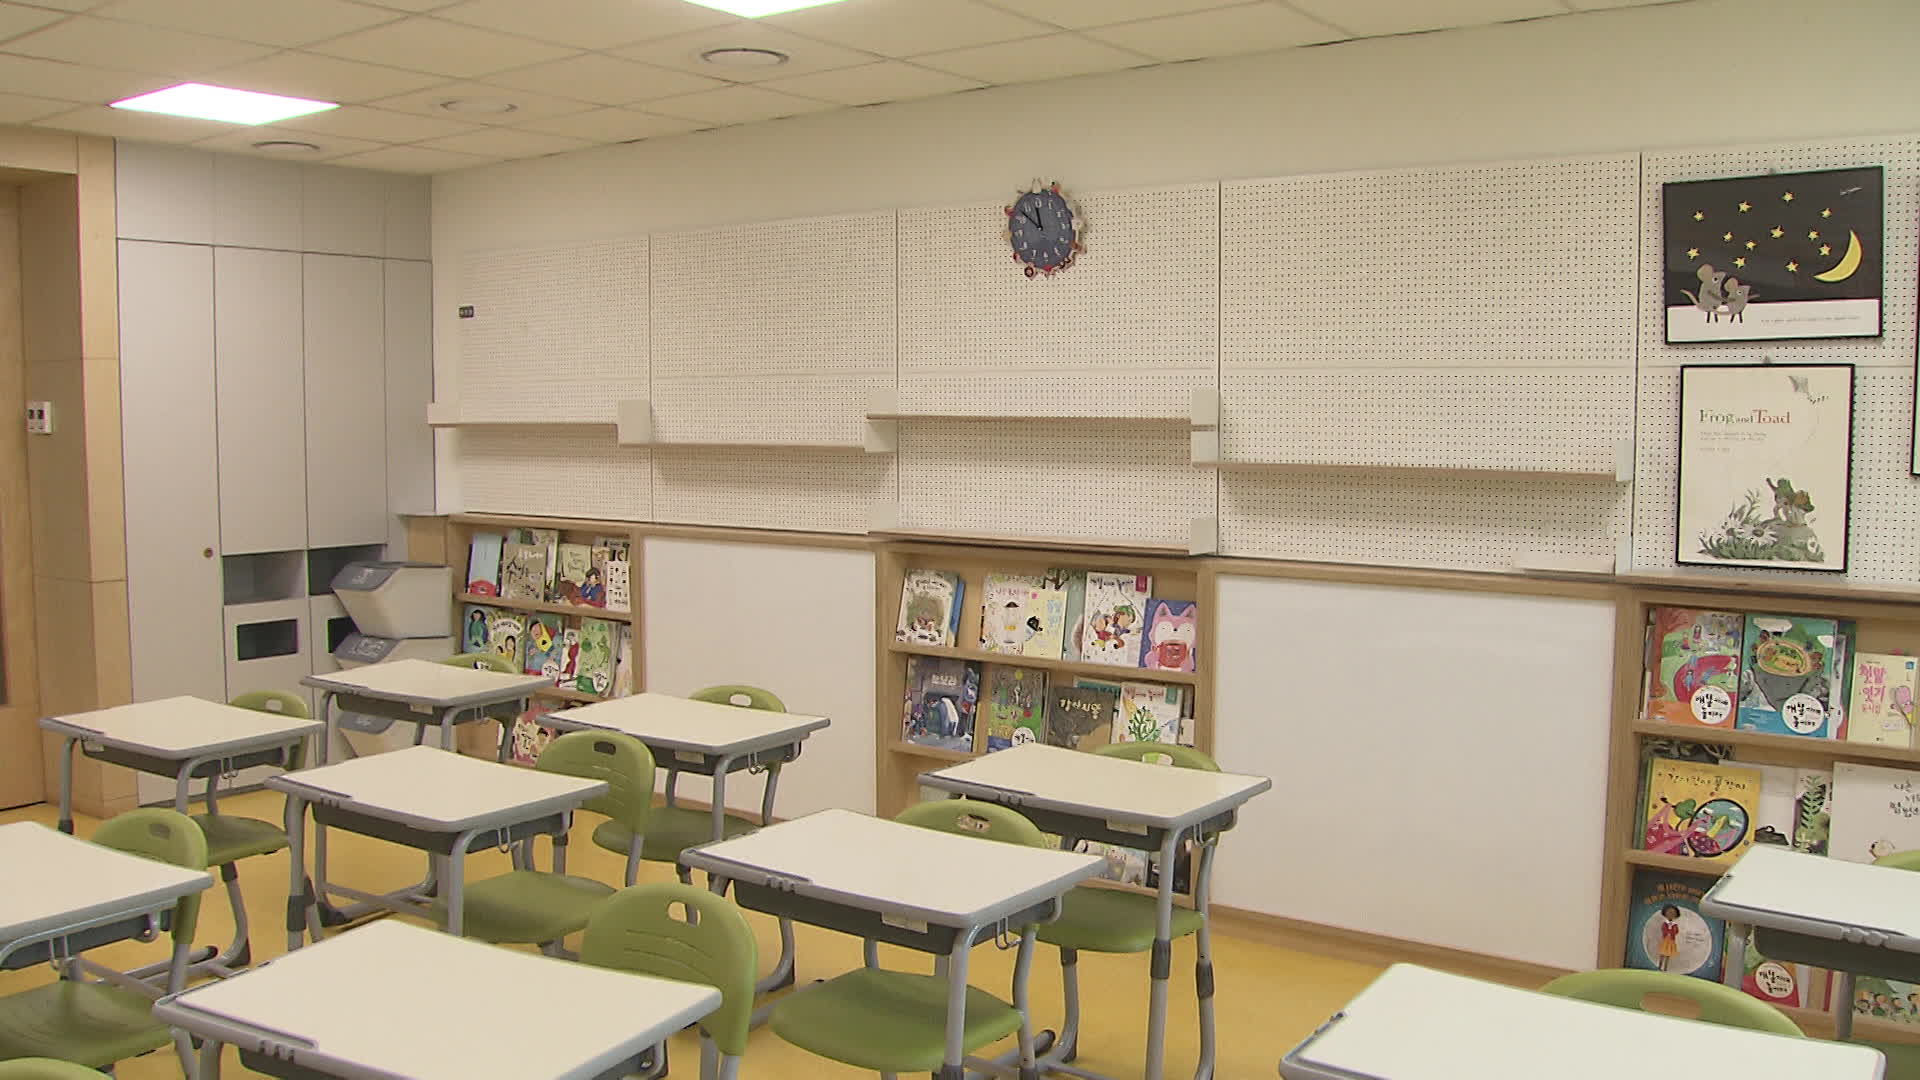 저학년 교실 뒤편엔 아이들 키에 맞춘 칠판이 부착돼 있고, 낮은 책꽂이가 마련돼 있다. 벽에는 작품을 붙일 수 있다.